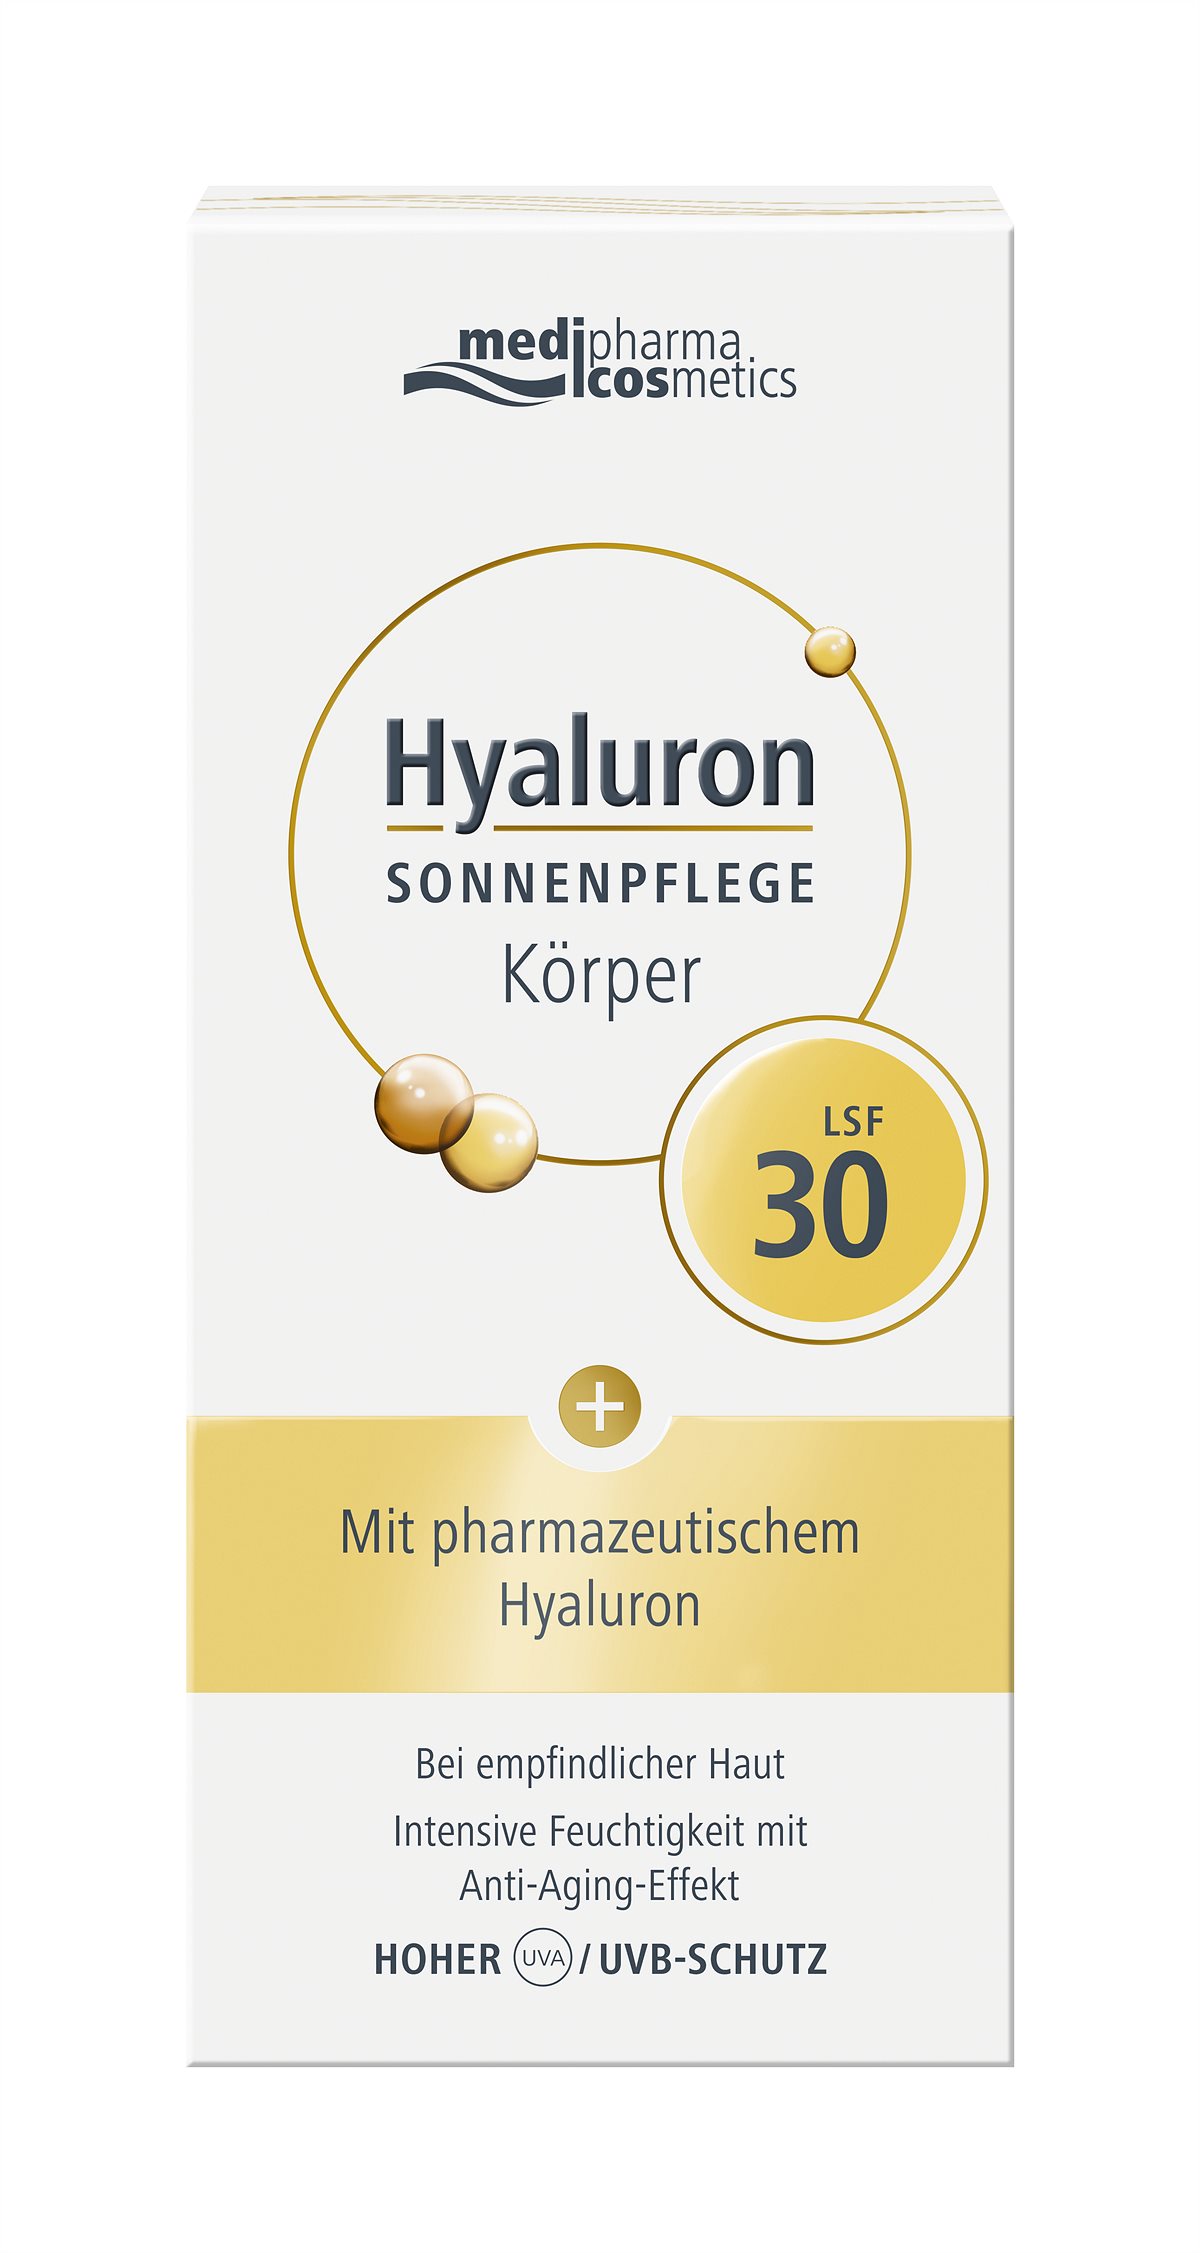 medipharma cosmetics Hyaluron SONNENPFLEGE Koerper LSF30 Box